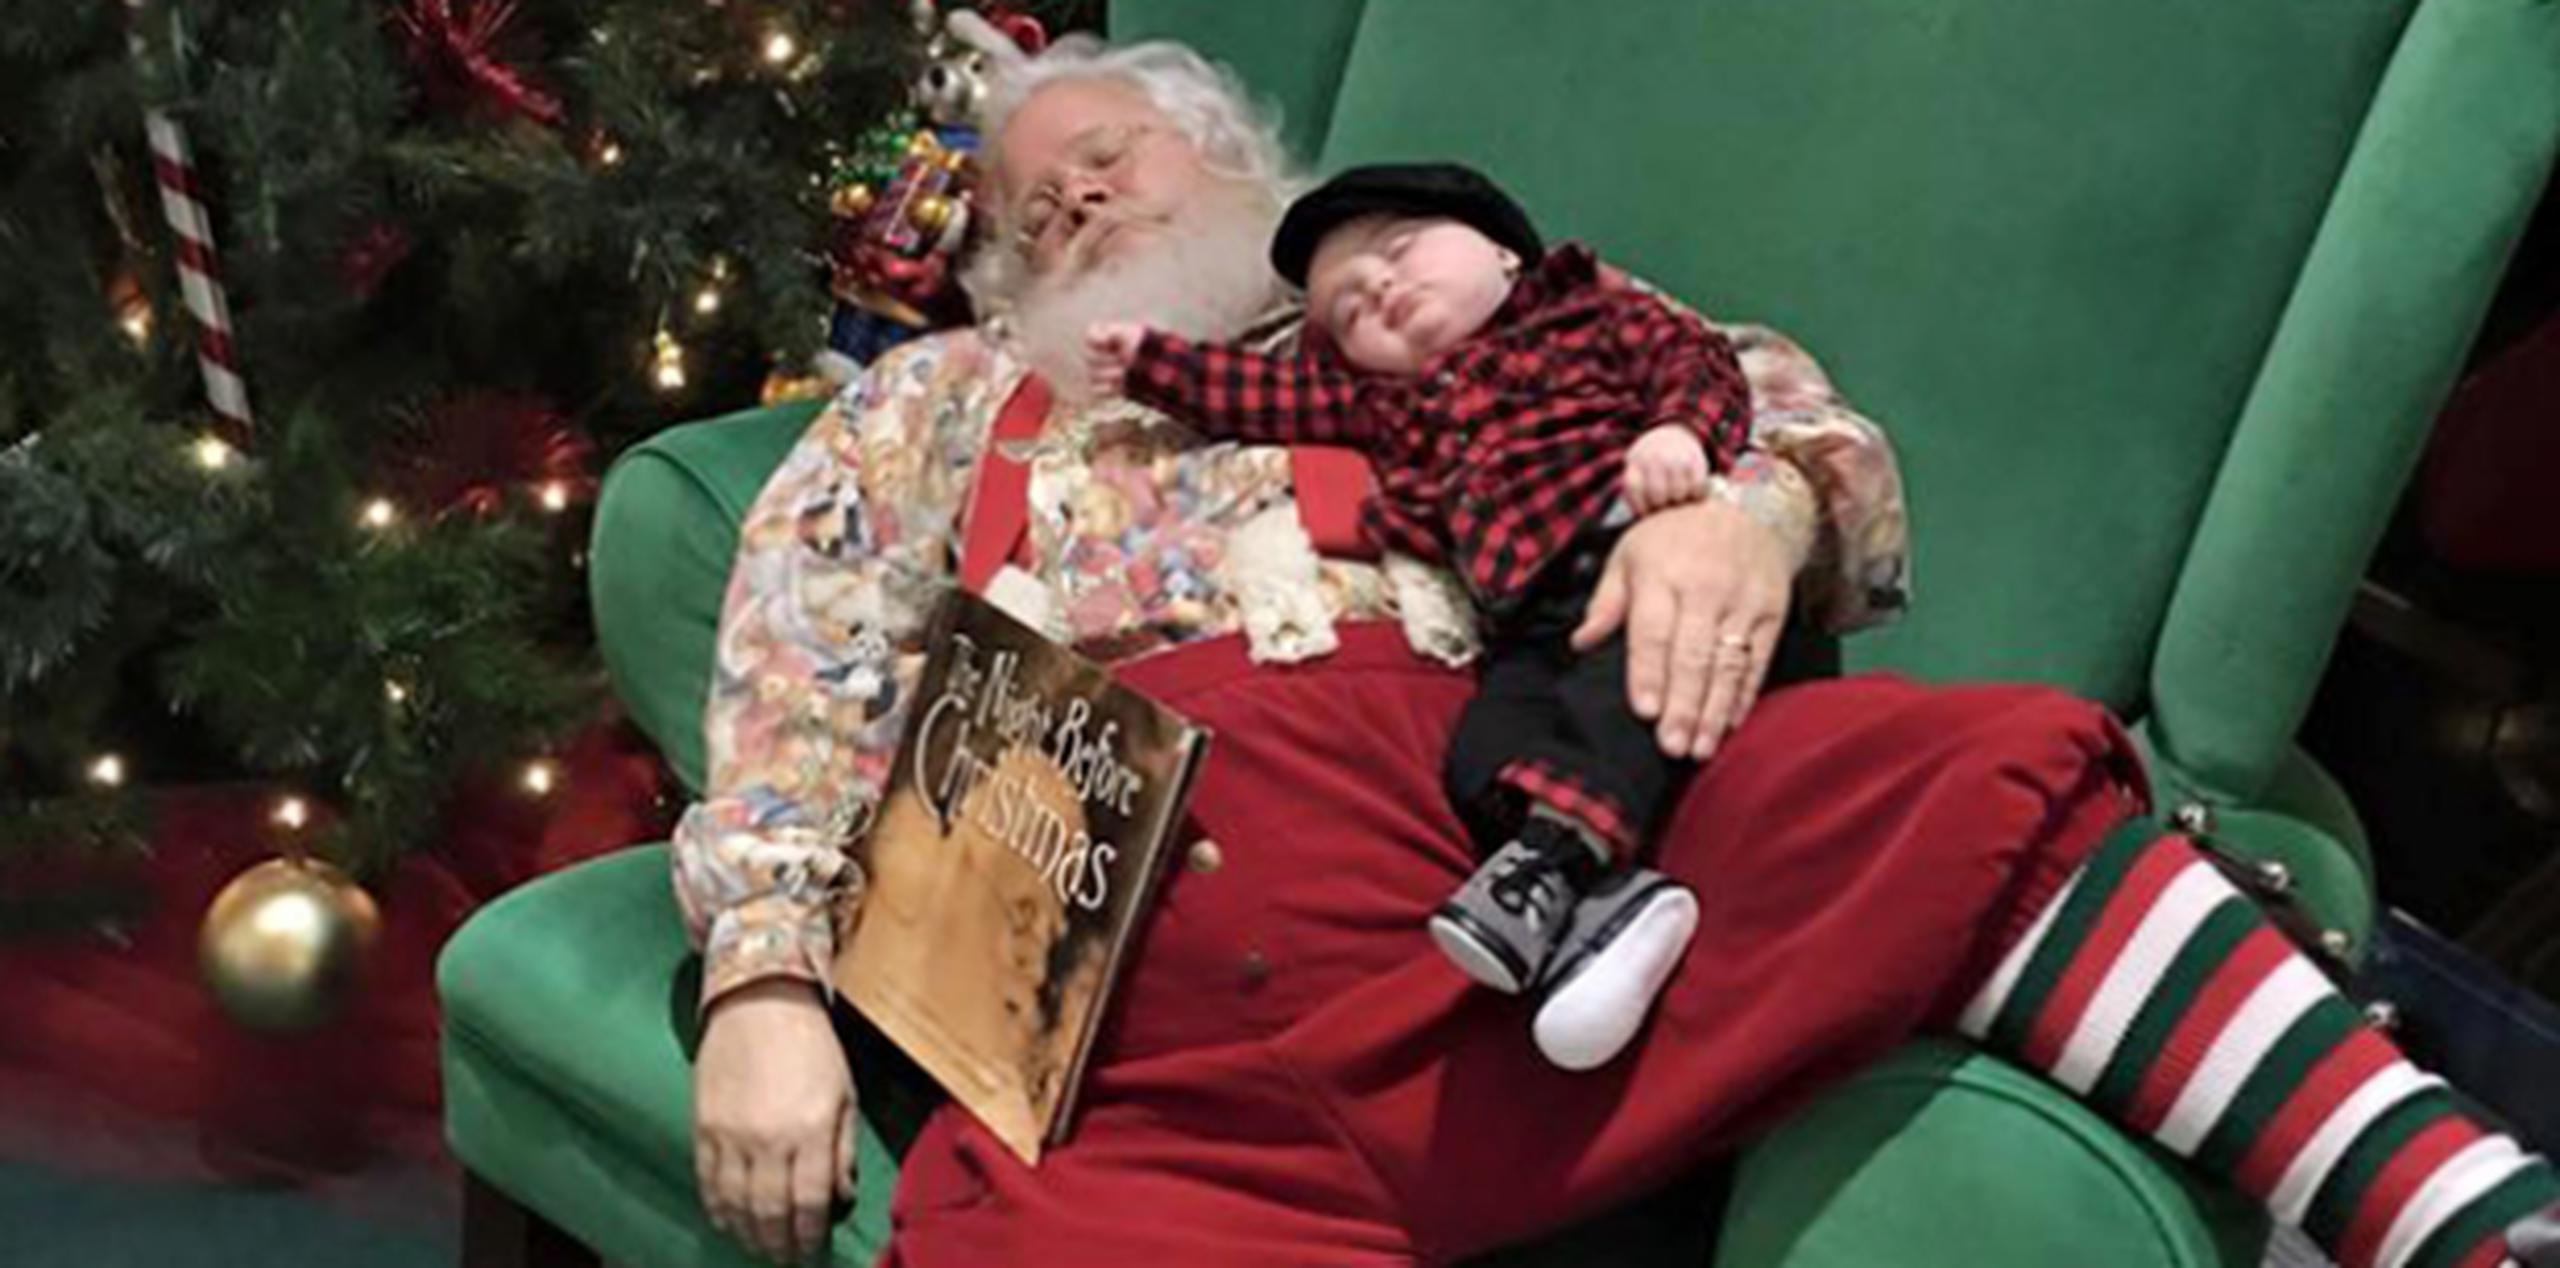 ¡Ay, qué comodidad! Zeke y Santa aprovechan para echar un sueñito y reponer fuerzas en lo que llega la Navidad. (AP)